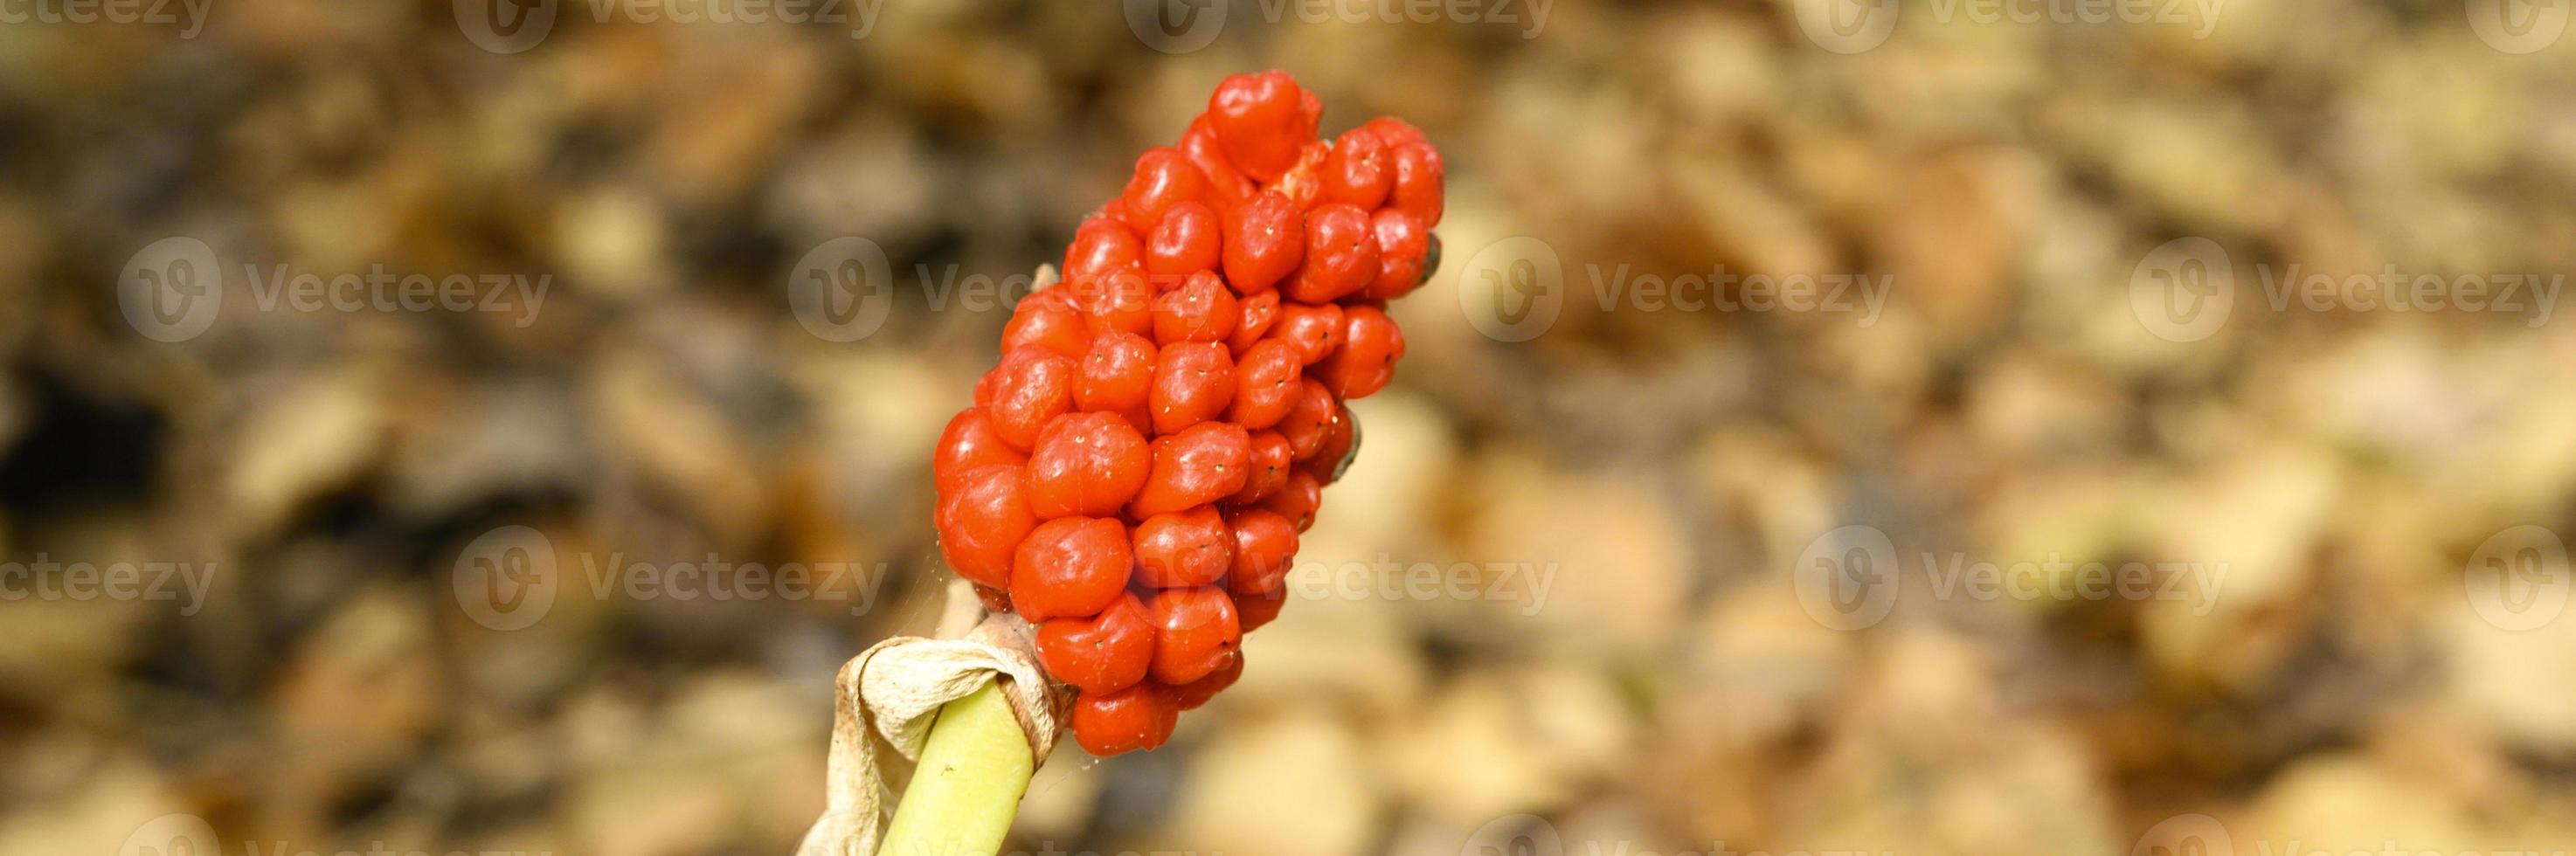 Arum plante aux fruits rouges mûrs dans la forêt photo